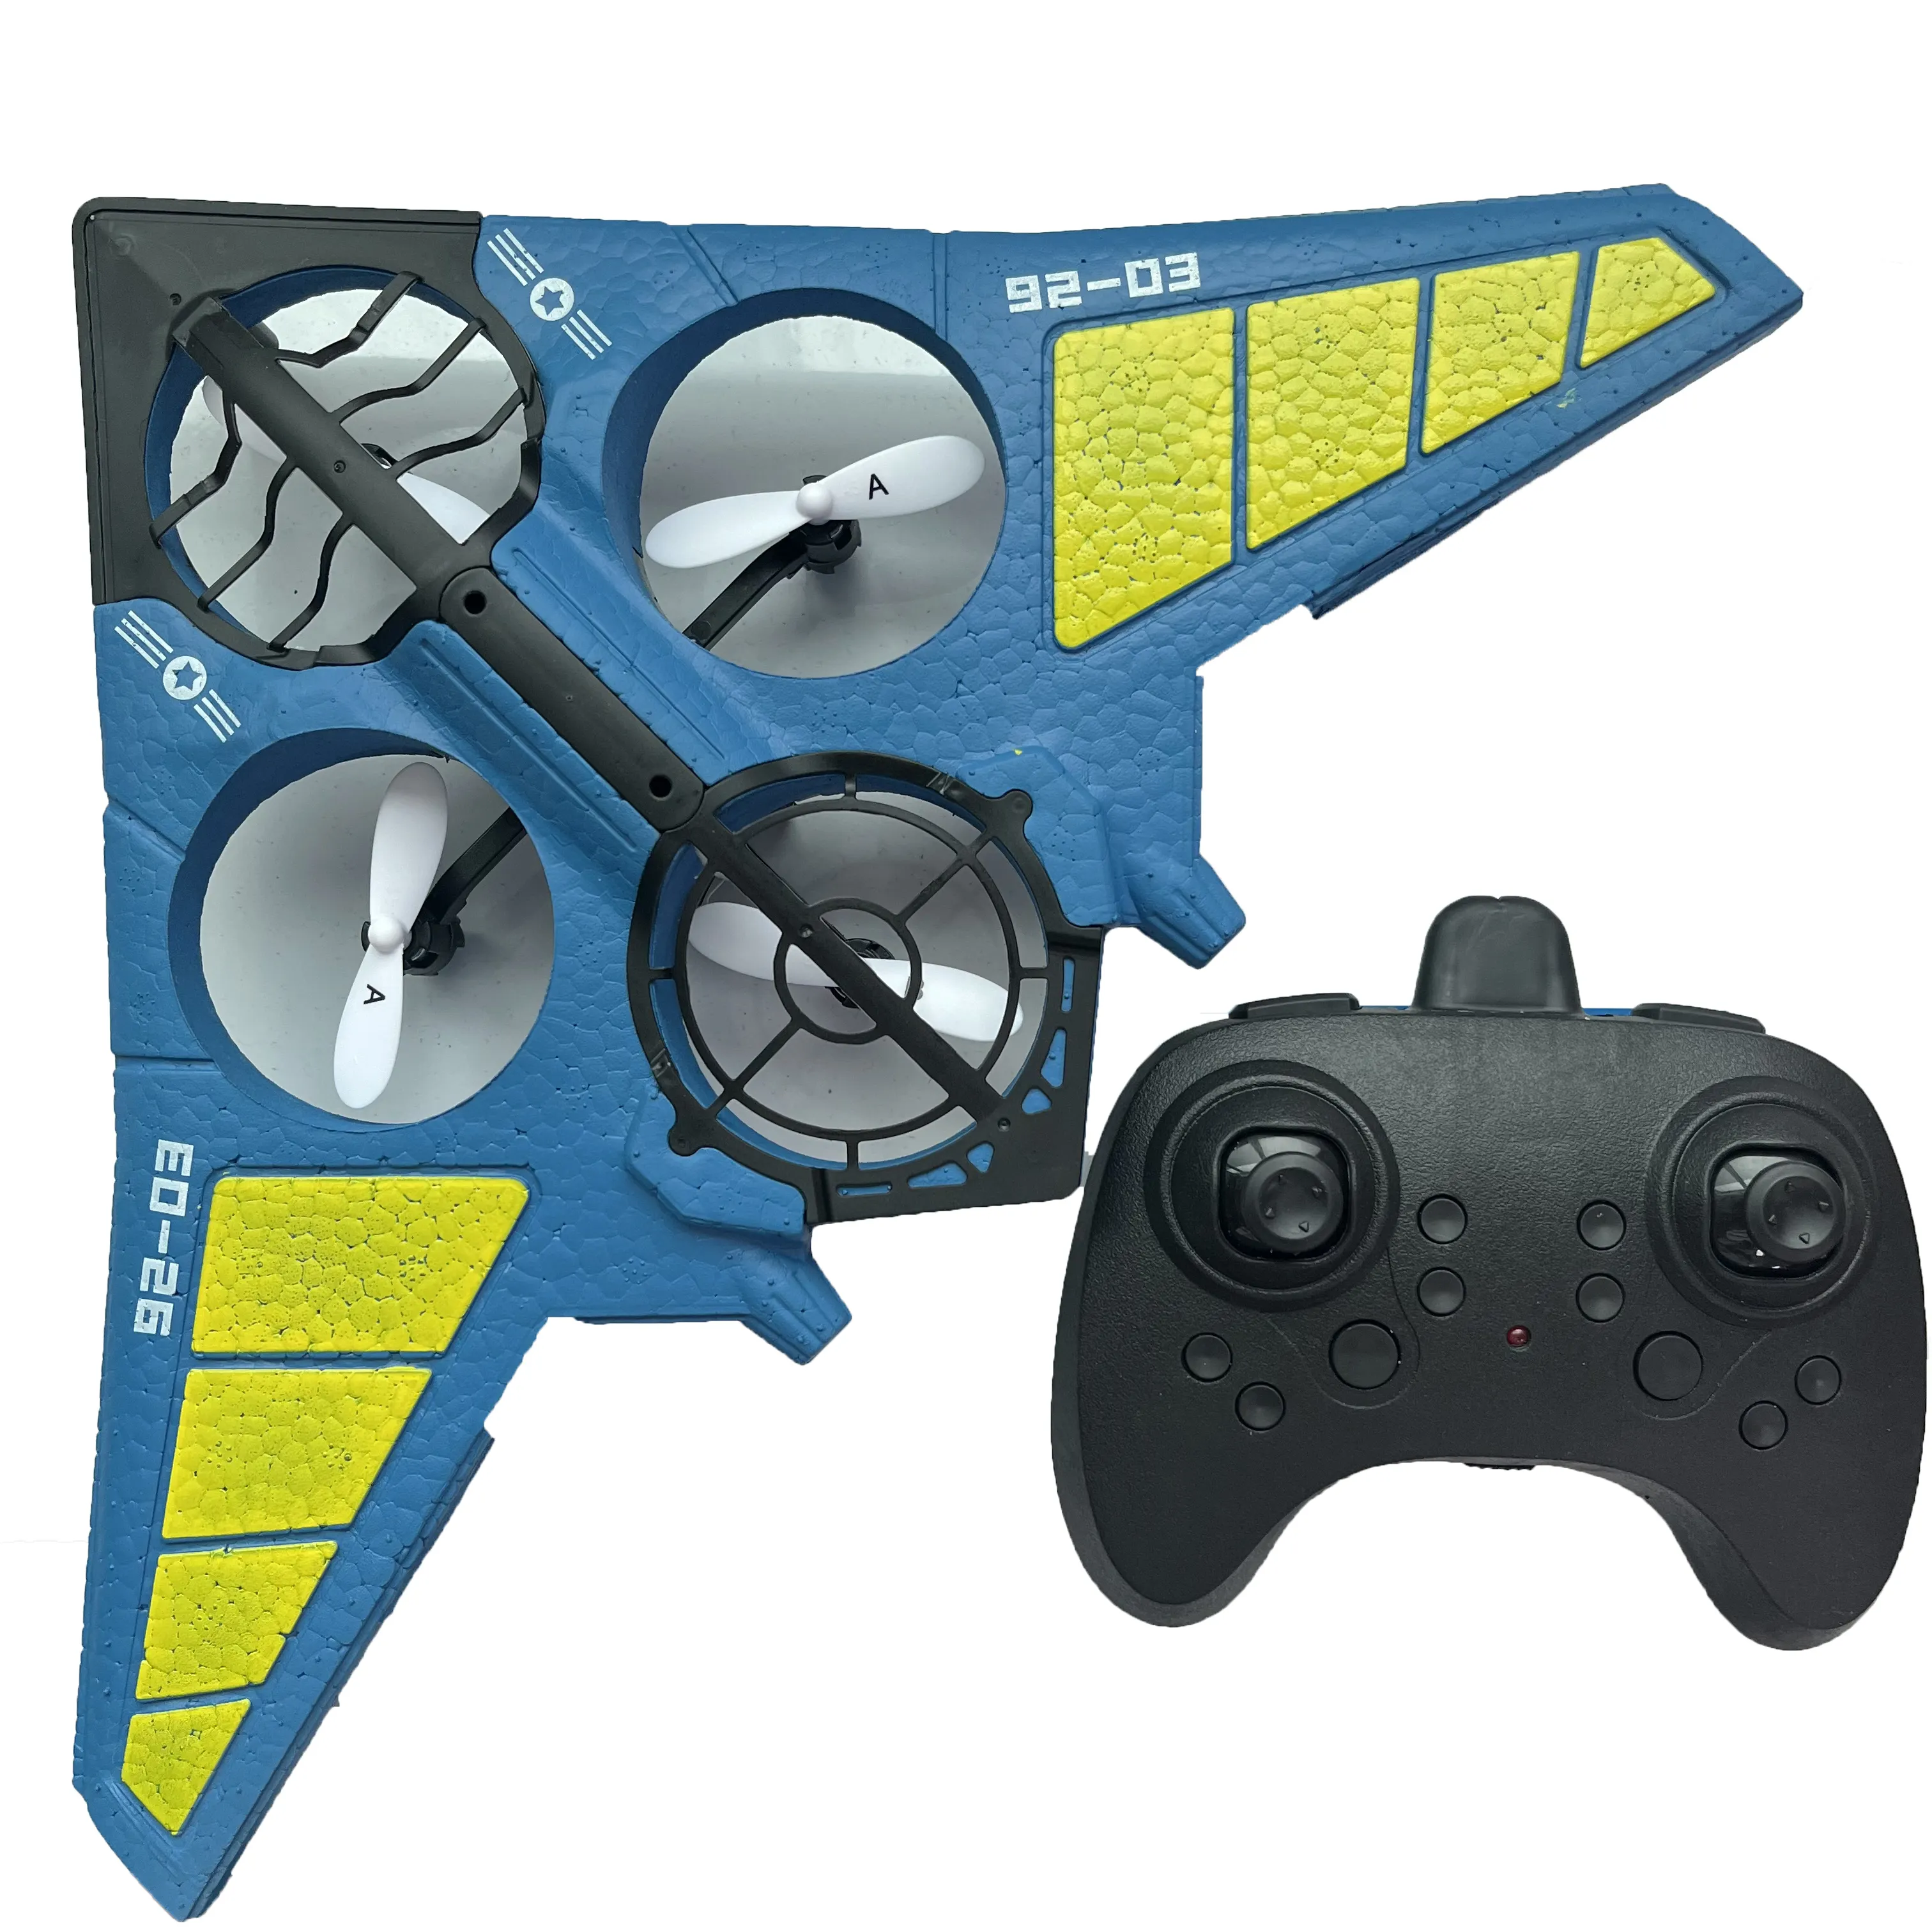 Juguetes Wireless Avion Airoplanes schiuma telecomandata aereo ultraleggero elicottero Hang aliante Rc aeroplani giocattoli